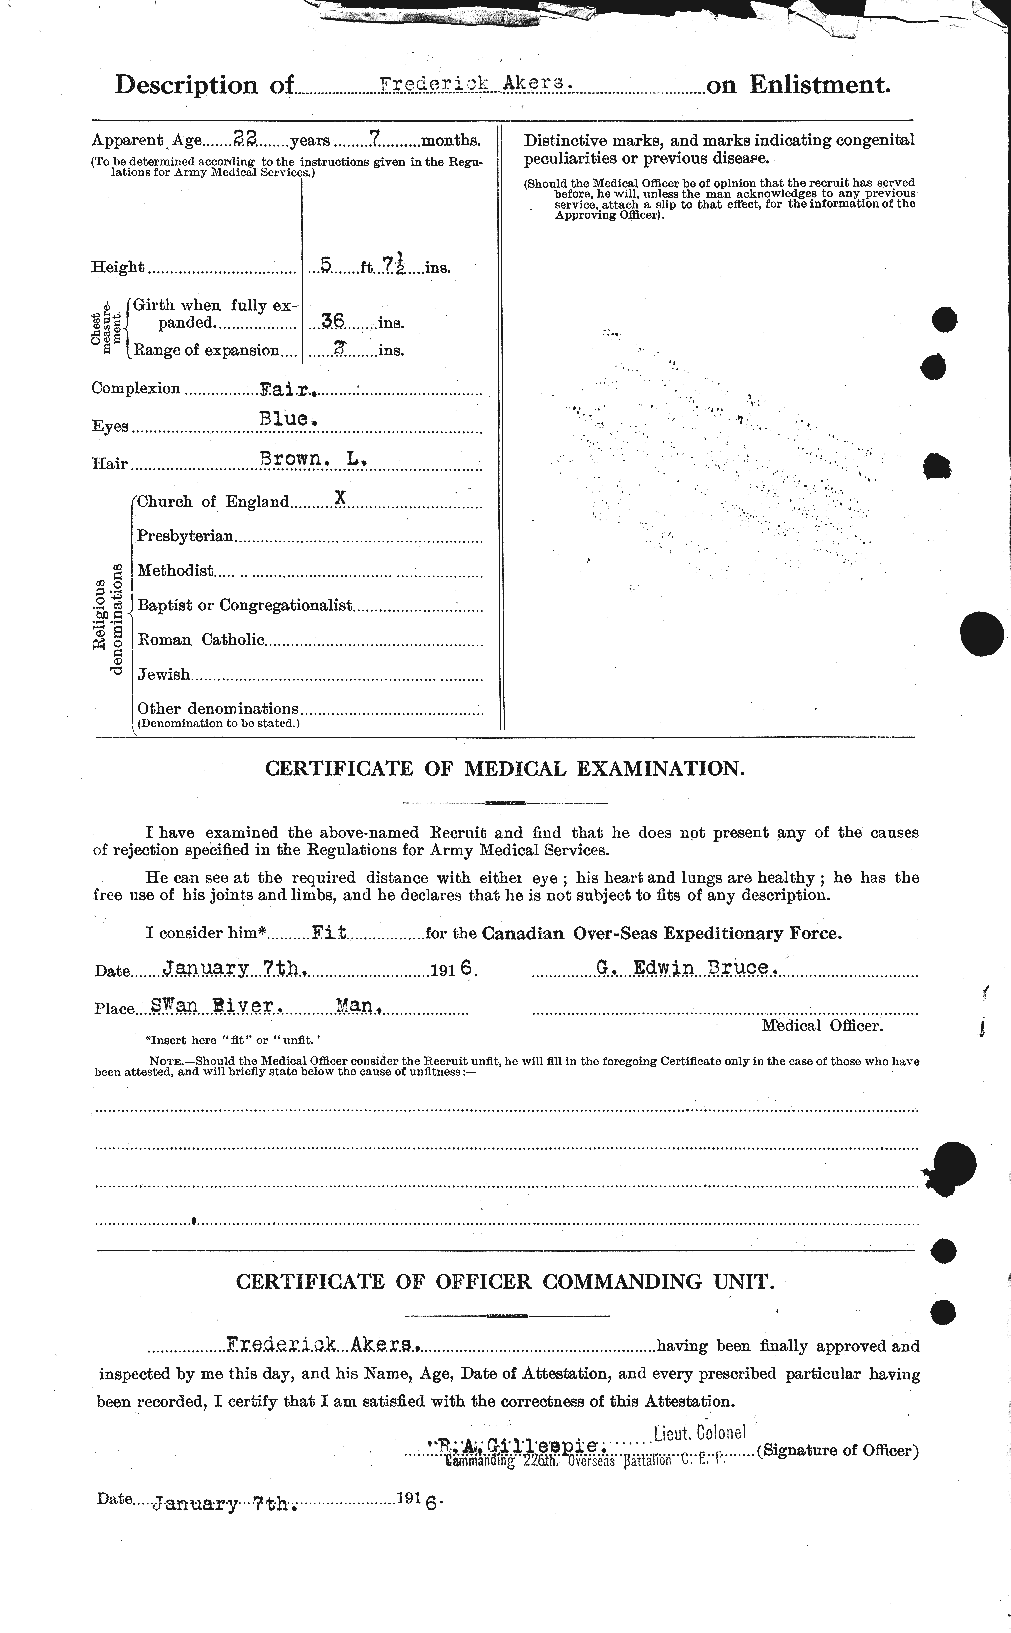 Dossiers du Personnel de la Première Guerre mondiale - CEC 203546b